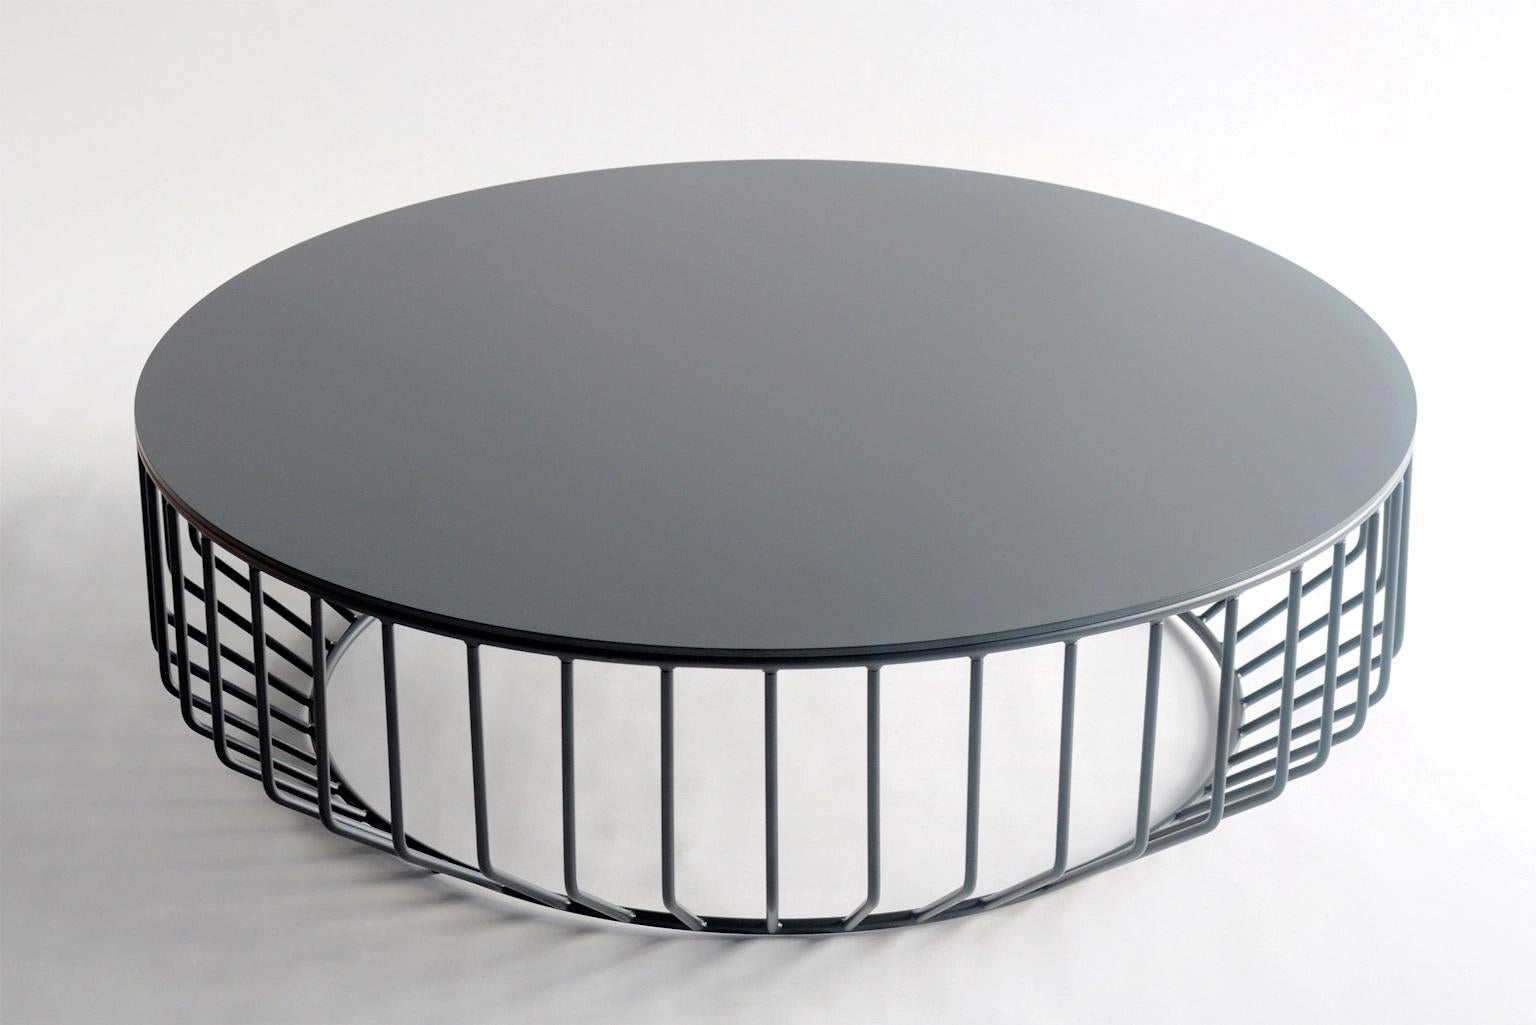 Grande table basse câblée par Phase Design
Dimensions : Ø 106,7 x H 33 cm : Ø 106,7 x H 33 cm. 
Matériaux : Métal peint par poudrage.

Barres et plaques rondes en acier massif. L'acier est disponible en blanc brillant ou plat, en noir, en gris ou en